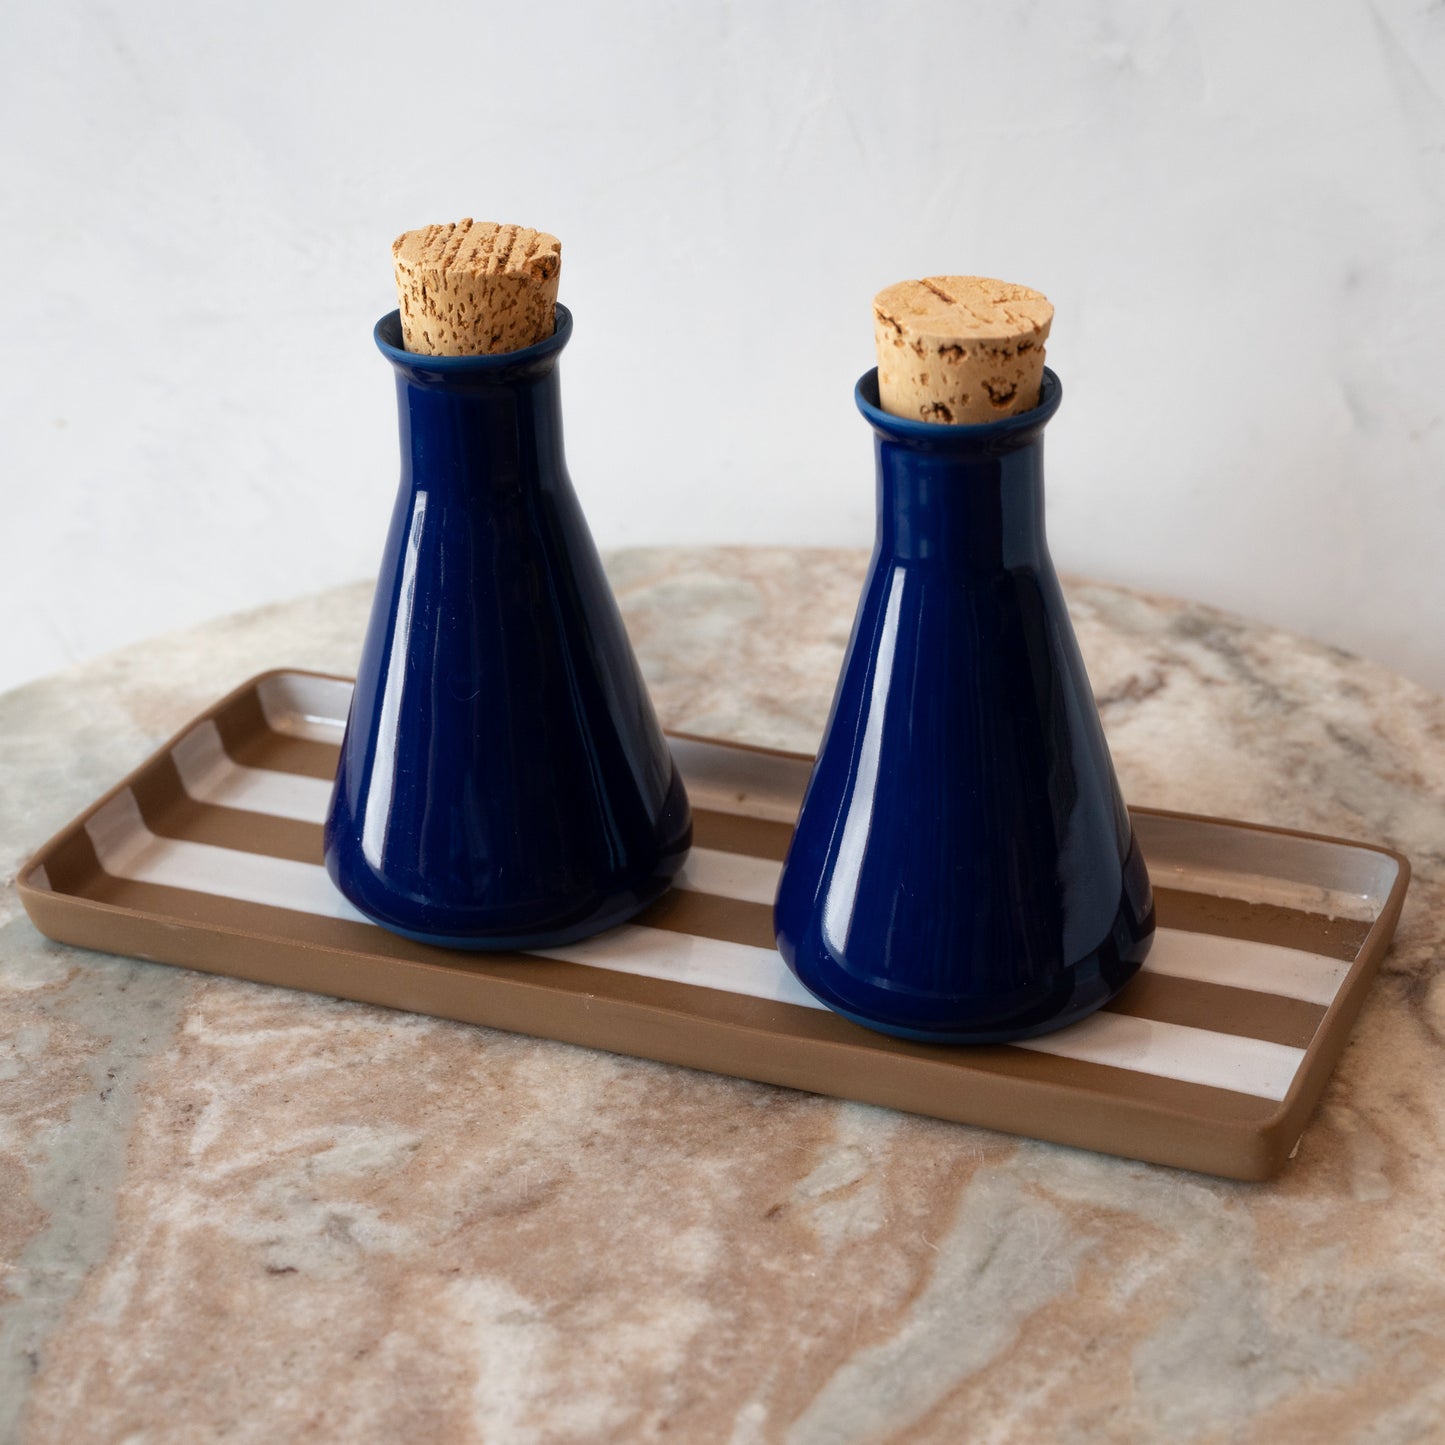 Handmade Porcelain Olive Oil & Vinegar Dispenser Tray Set